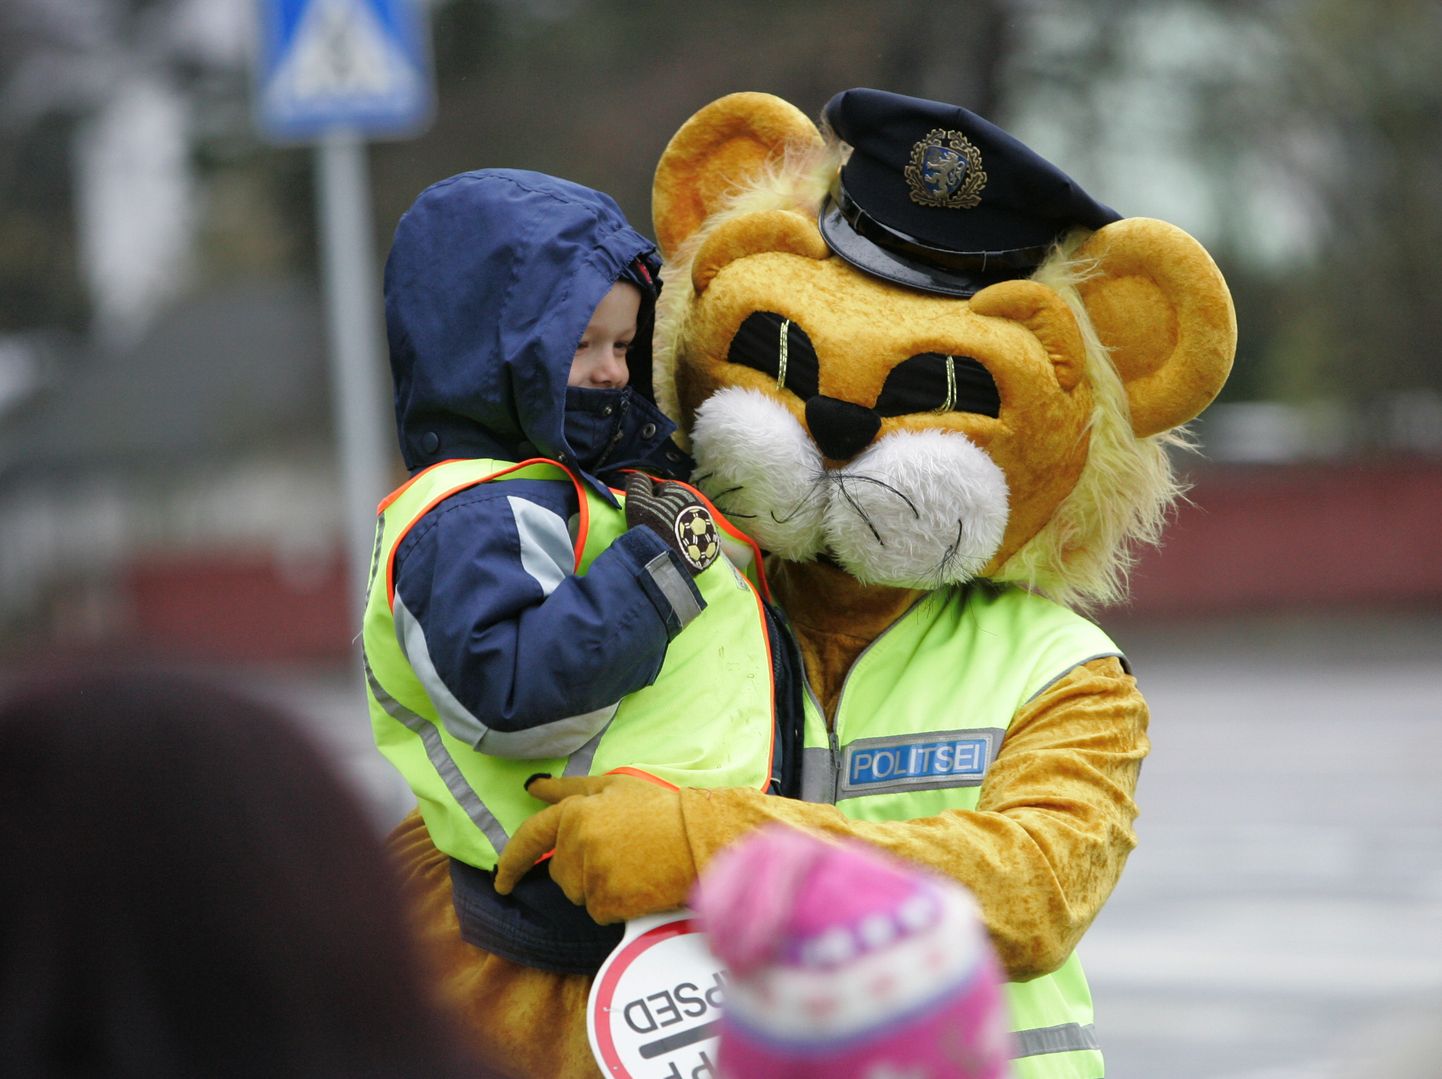 Politsei maskott lõvi Leo koos lasteaialapsega. Pilt on illustratiivne.